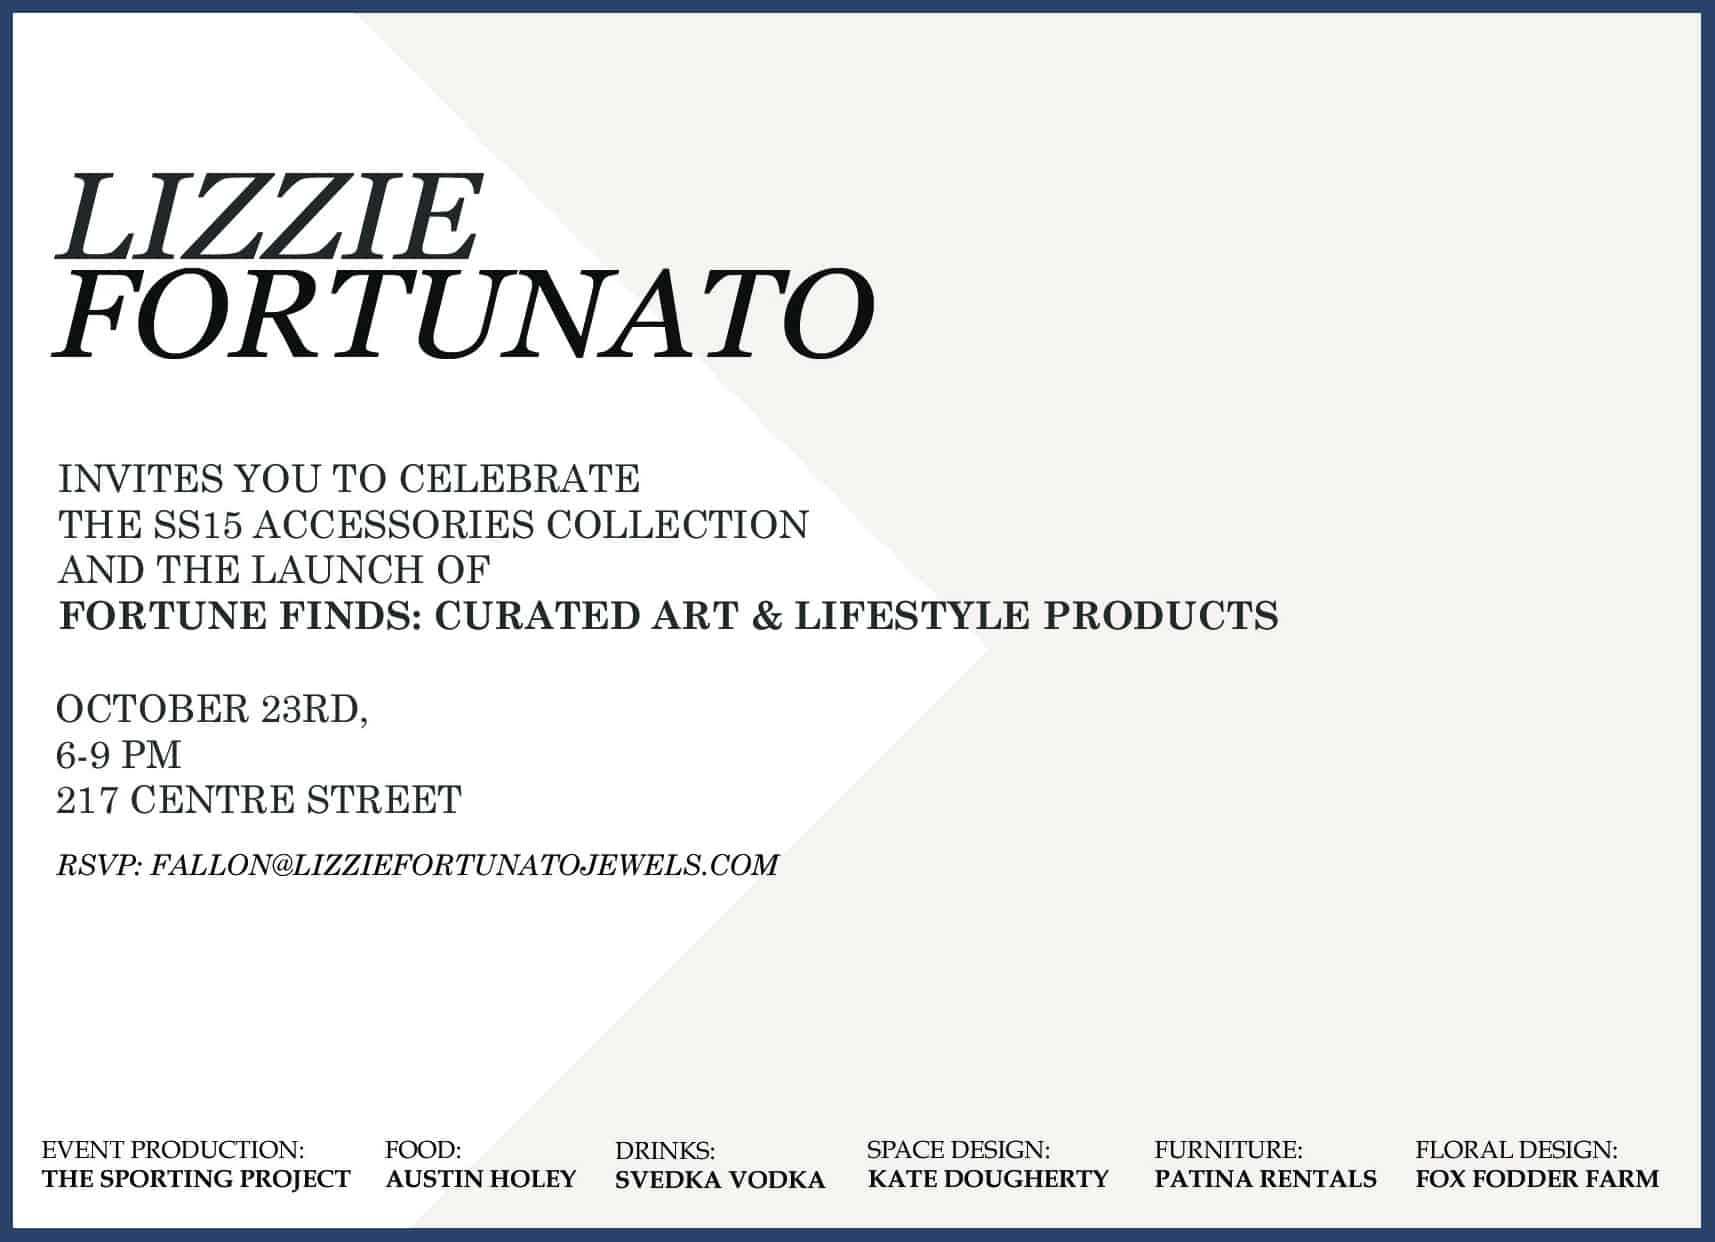 Lizzie Fortunato Fortune Finds invite